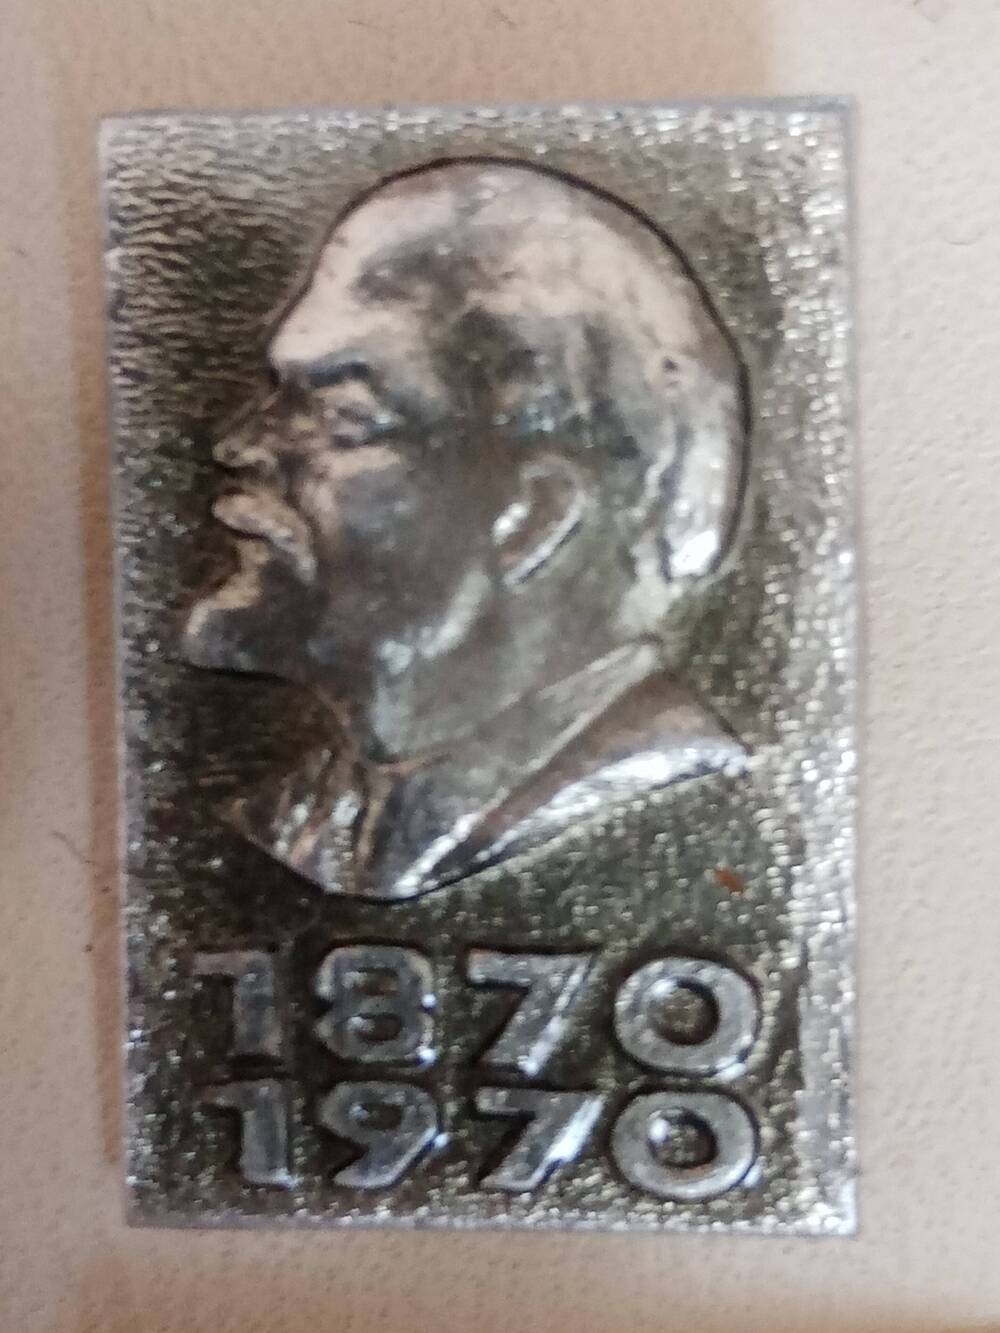 Значок . Изображение В.И. Ленина с надписью 1870-1970.